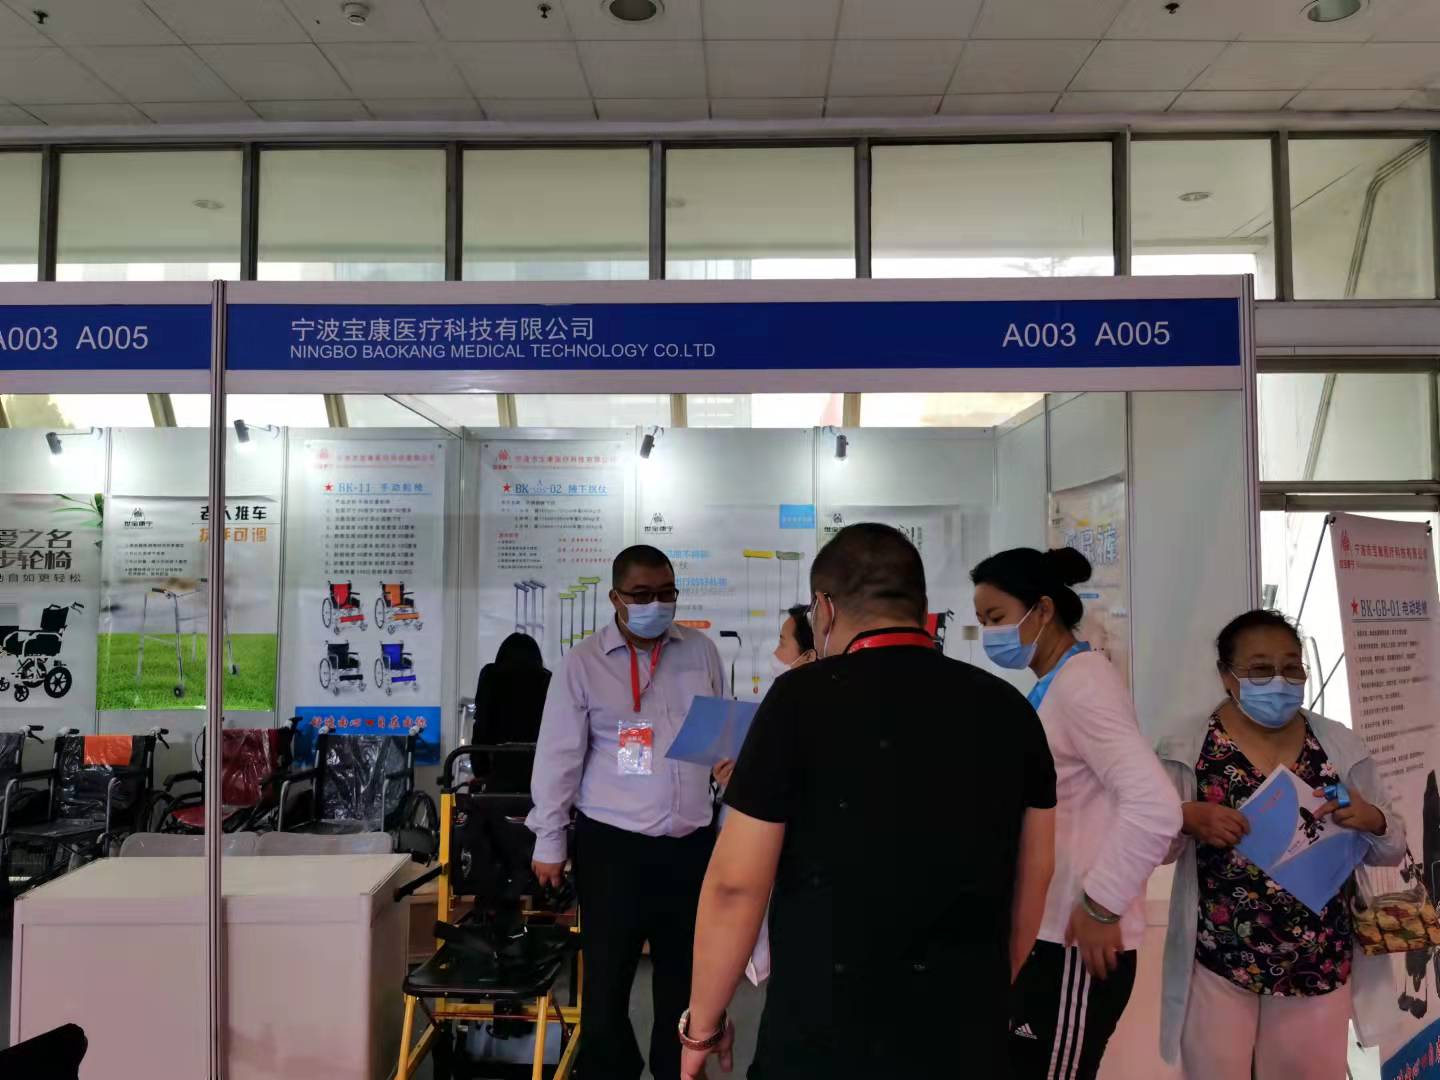 宁波宝康医疗科技有限公司参加北京医疗器械展览会